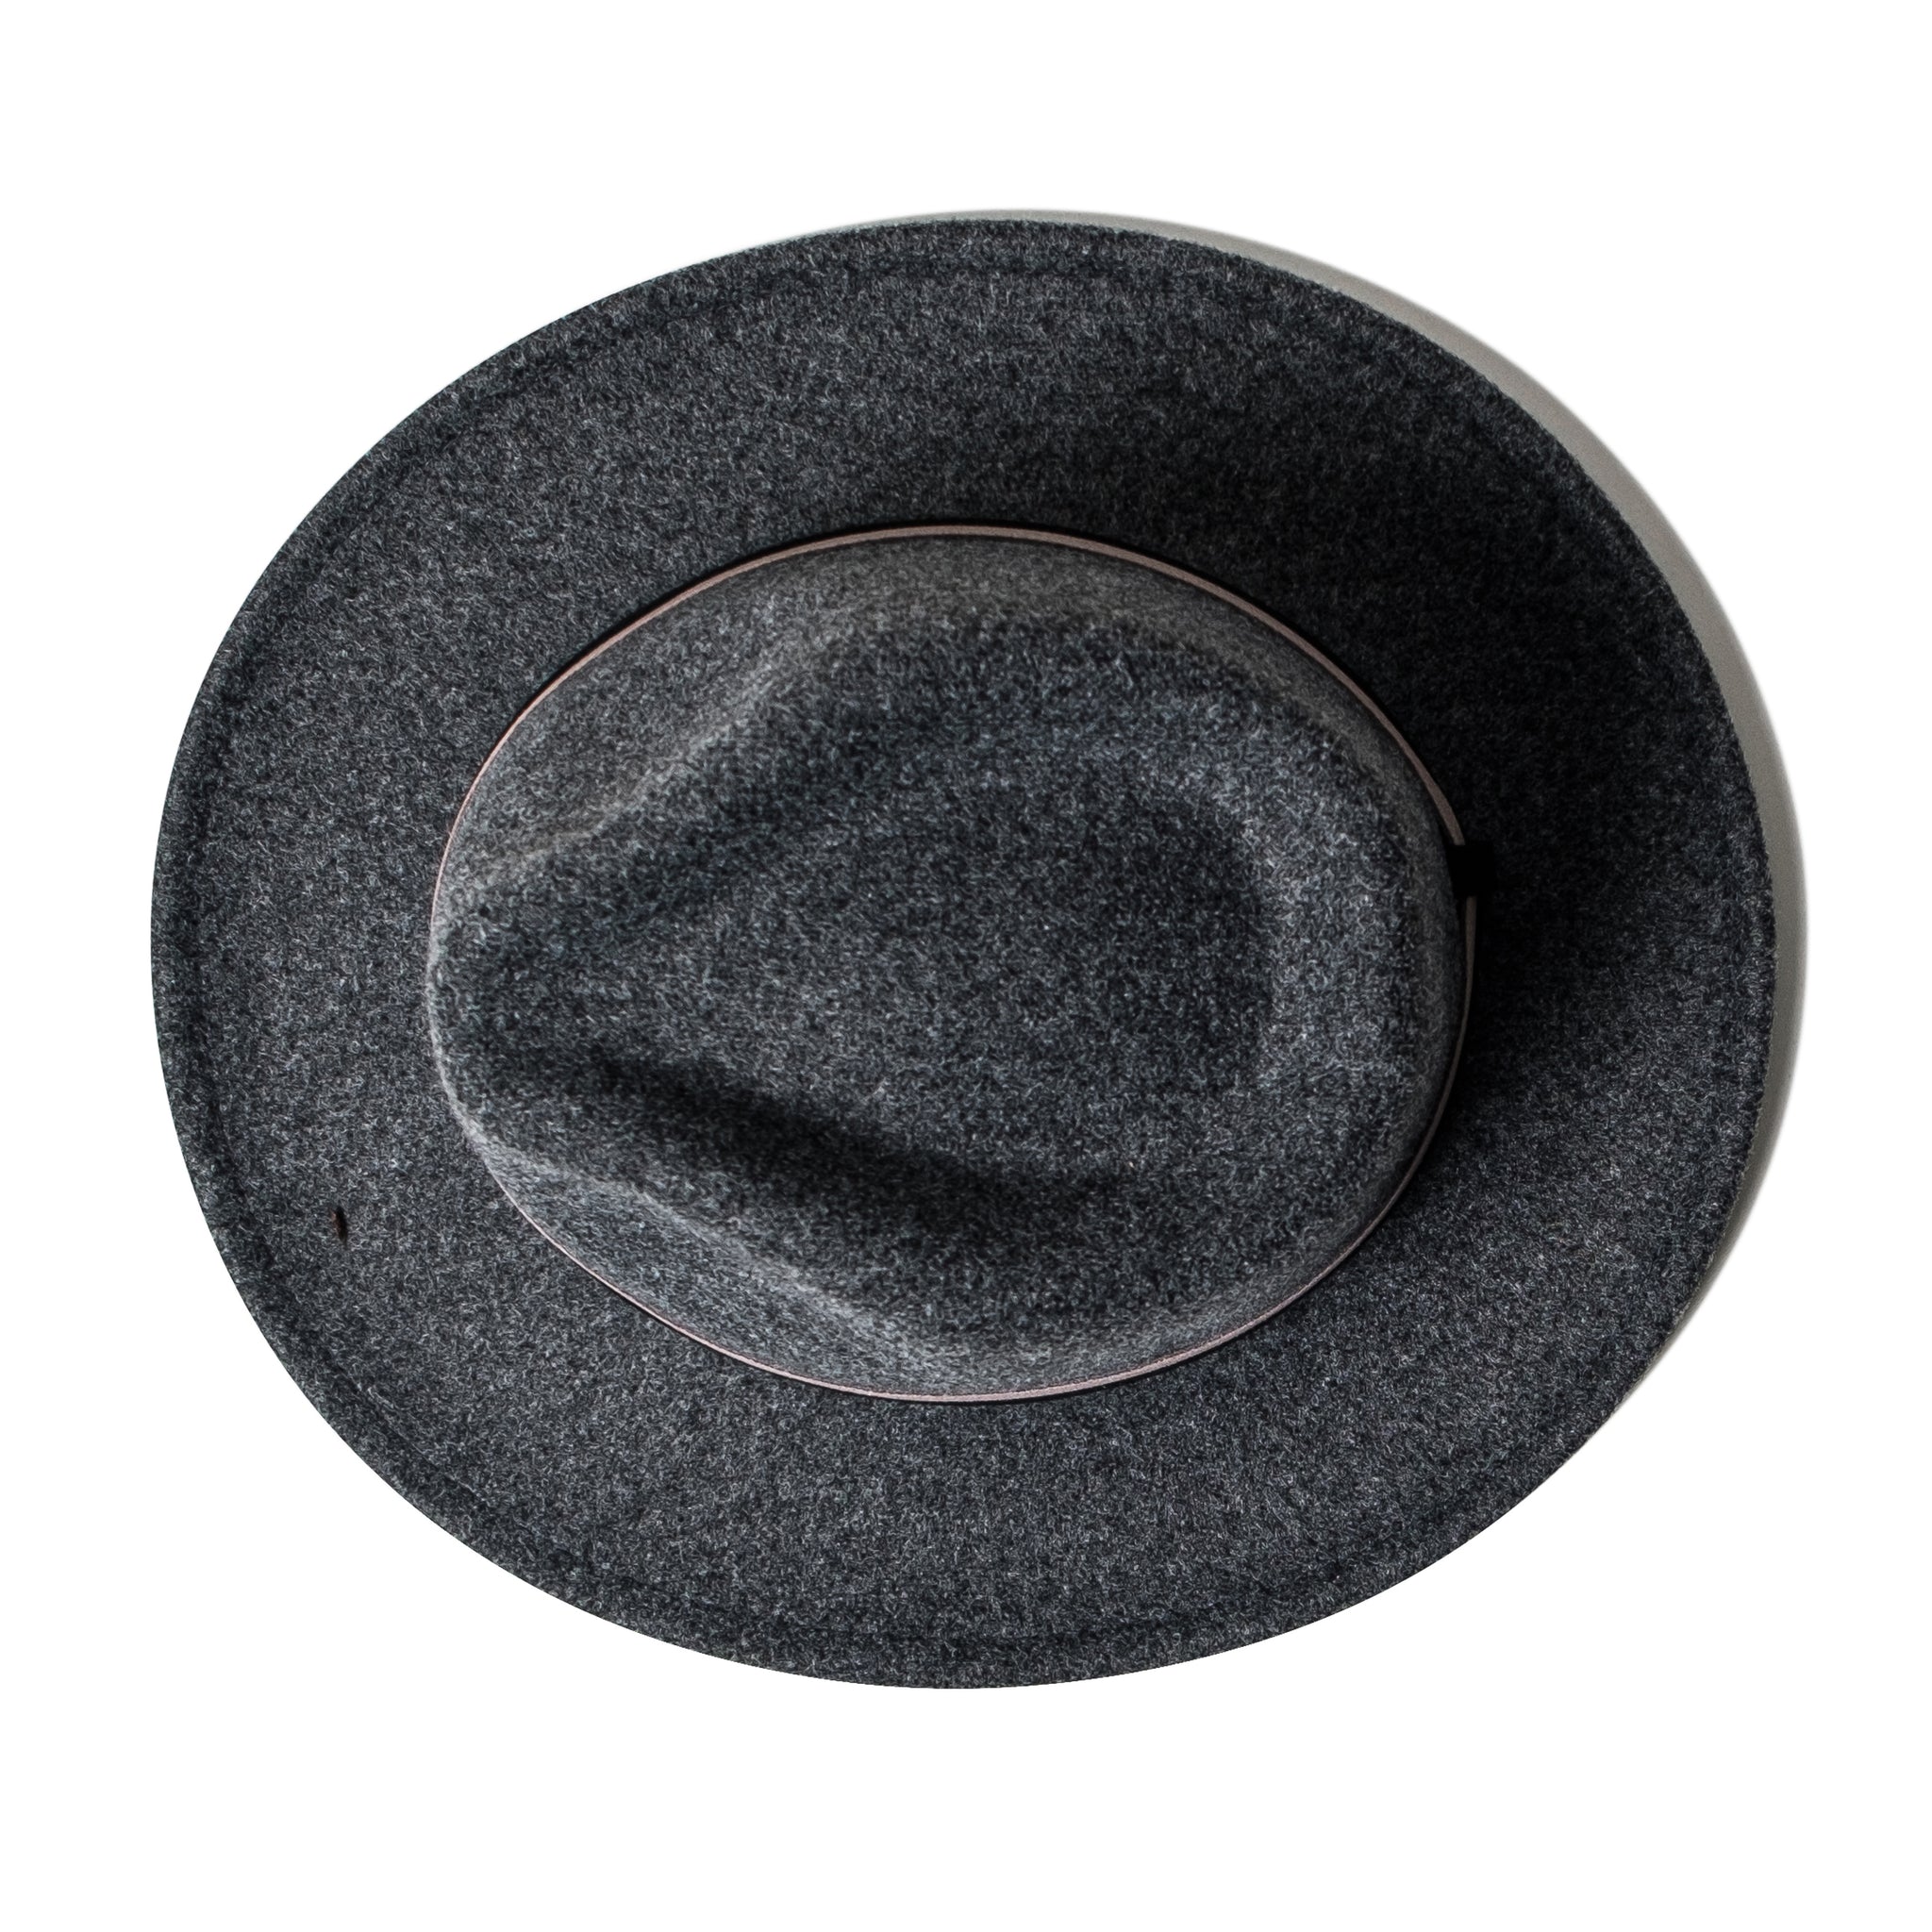 Chokore Vintage Fedora Hat (Dark Gray)